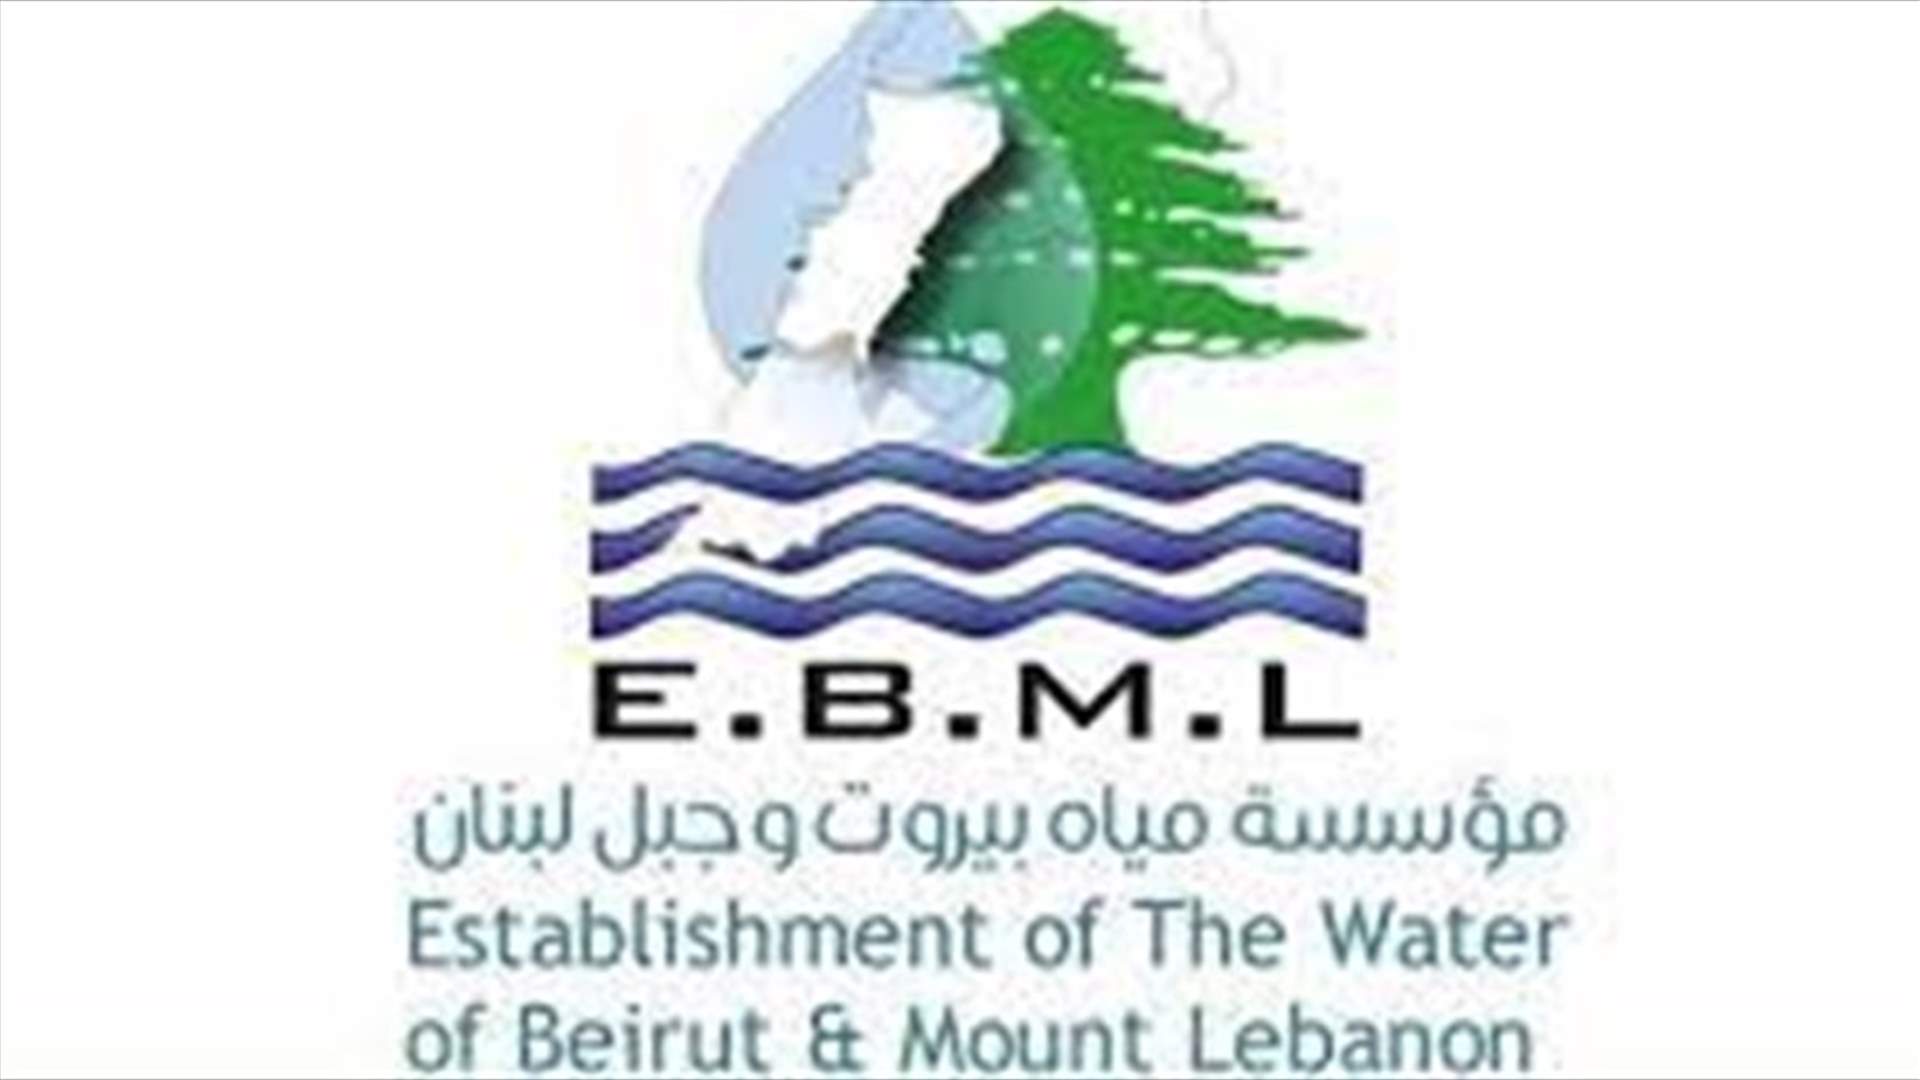 مياه بيروت وجبل لبنان: مخزون المازوت صفر وبرنامج تقنين قاس